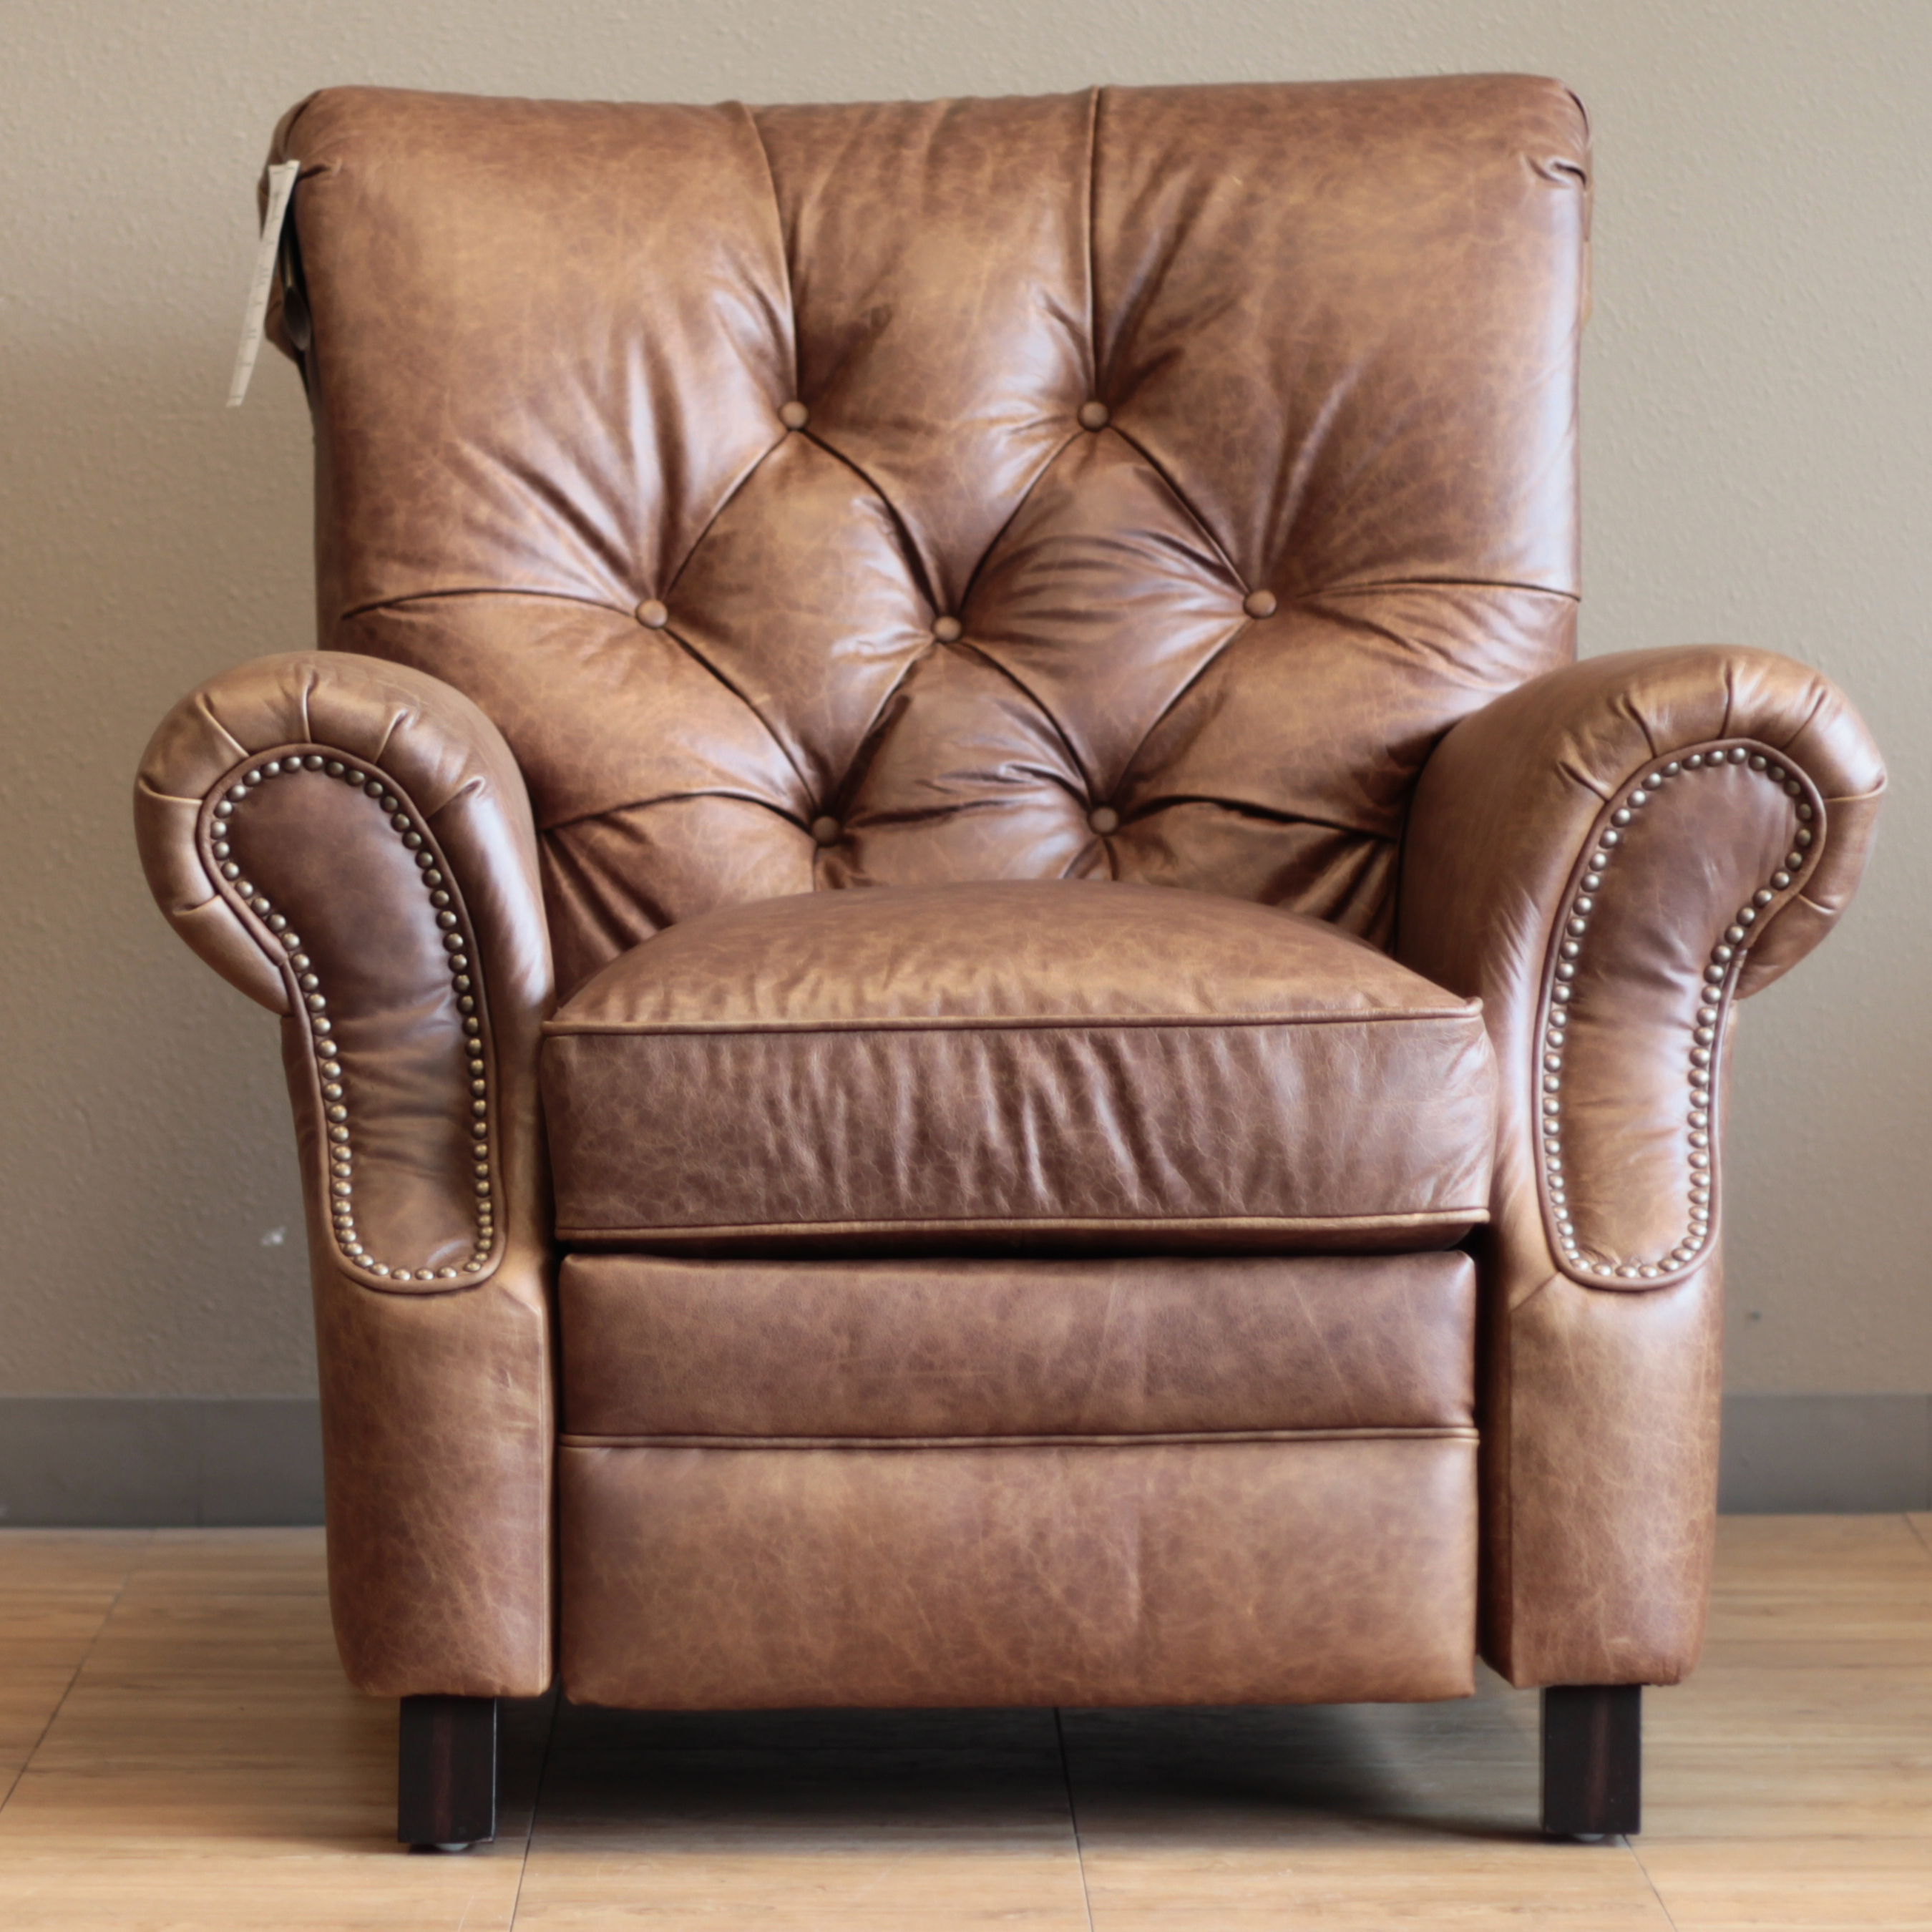 Barcalounger Phoenix II Recliner Chair - Leather Recliner Chair